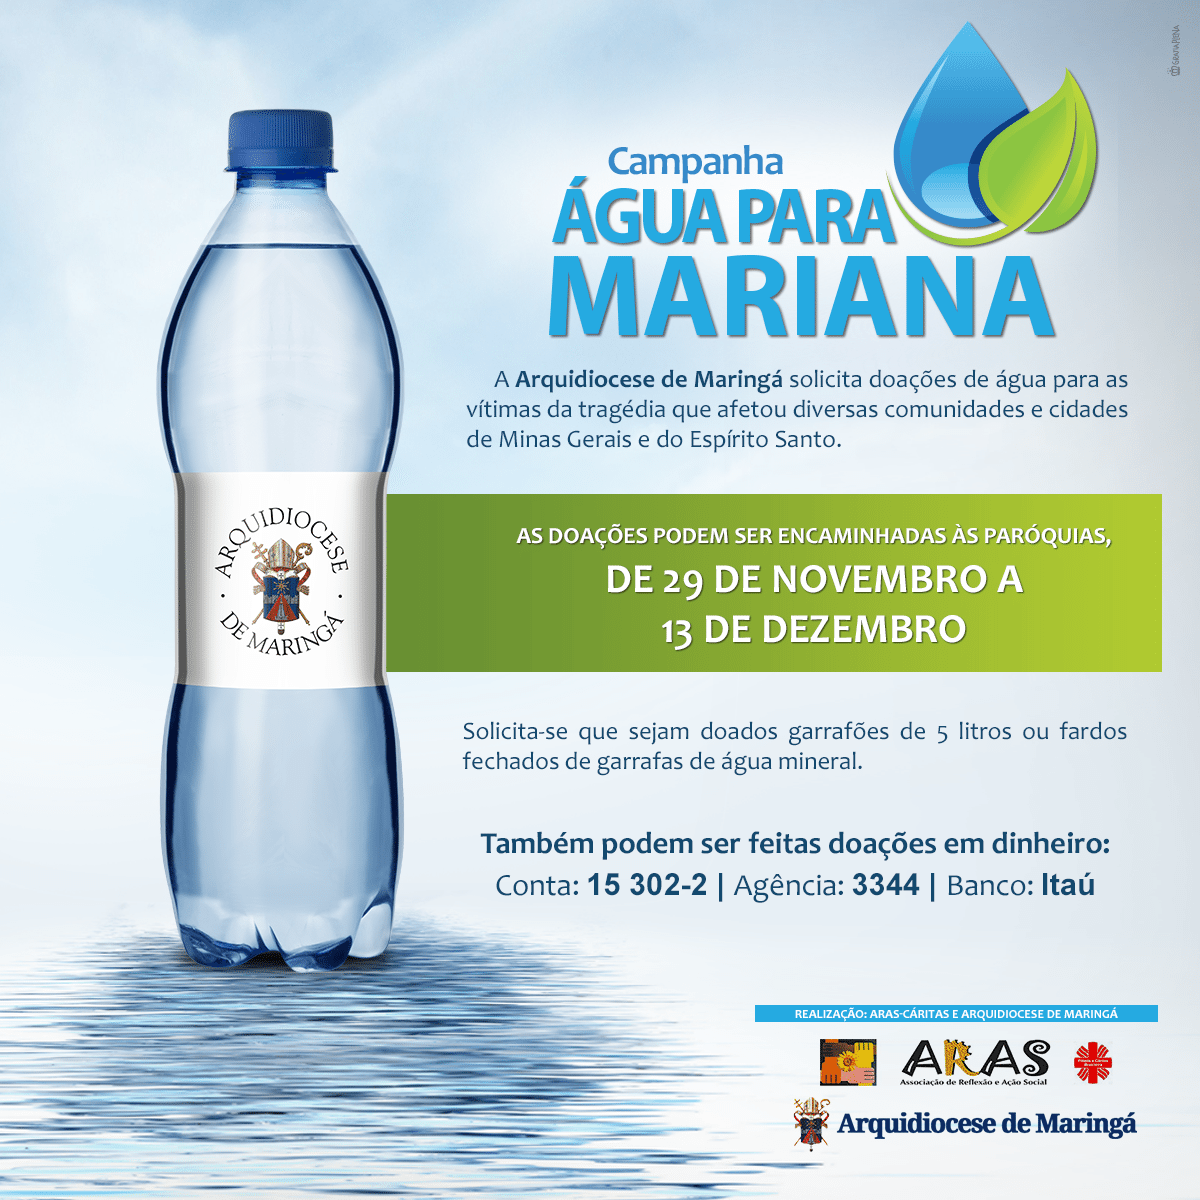 imagem Campanha “Água para Mariana”, para vítimas da tragédia do rompimento das barragens em Minas Gerais